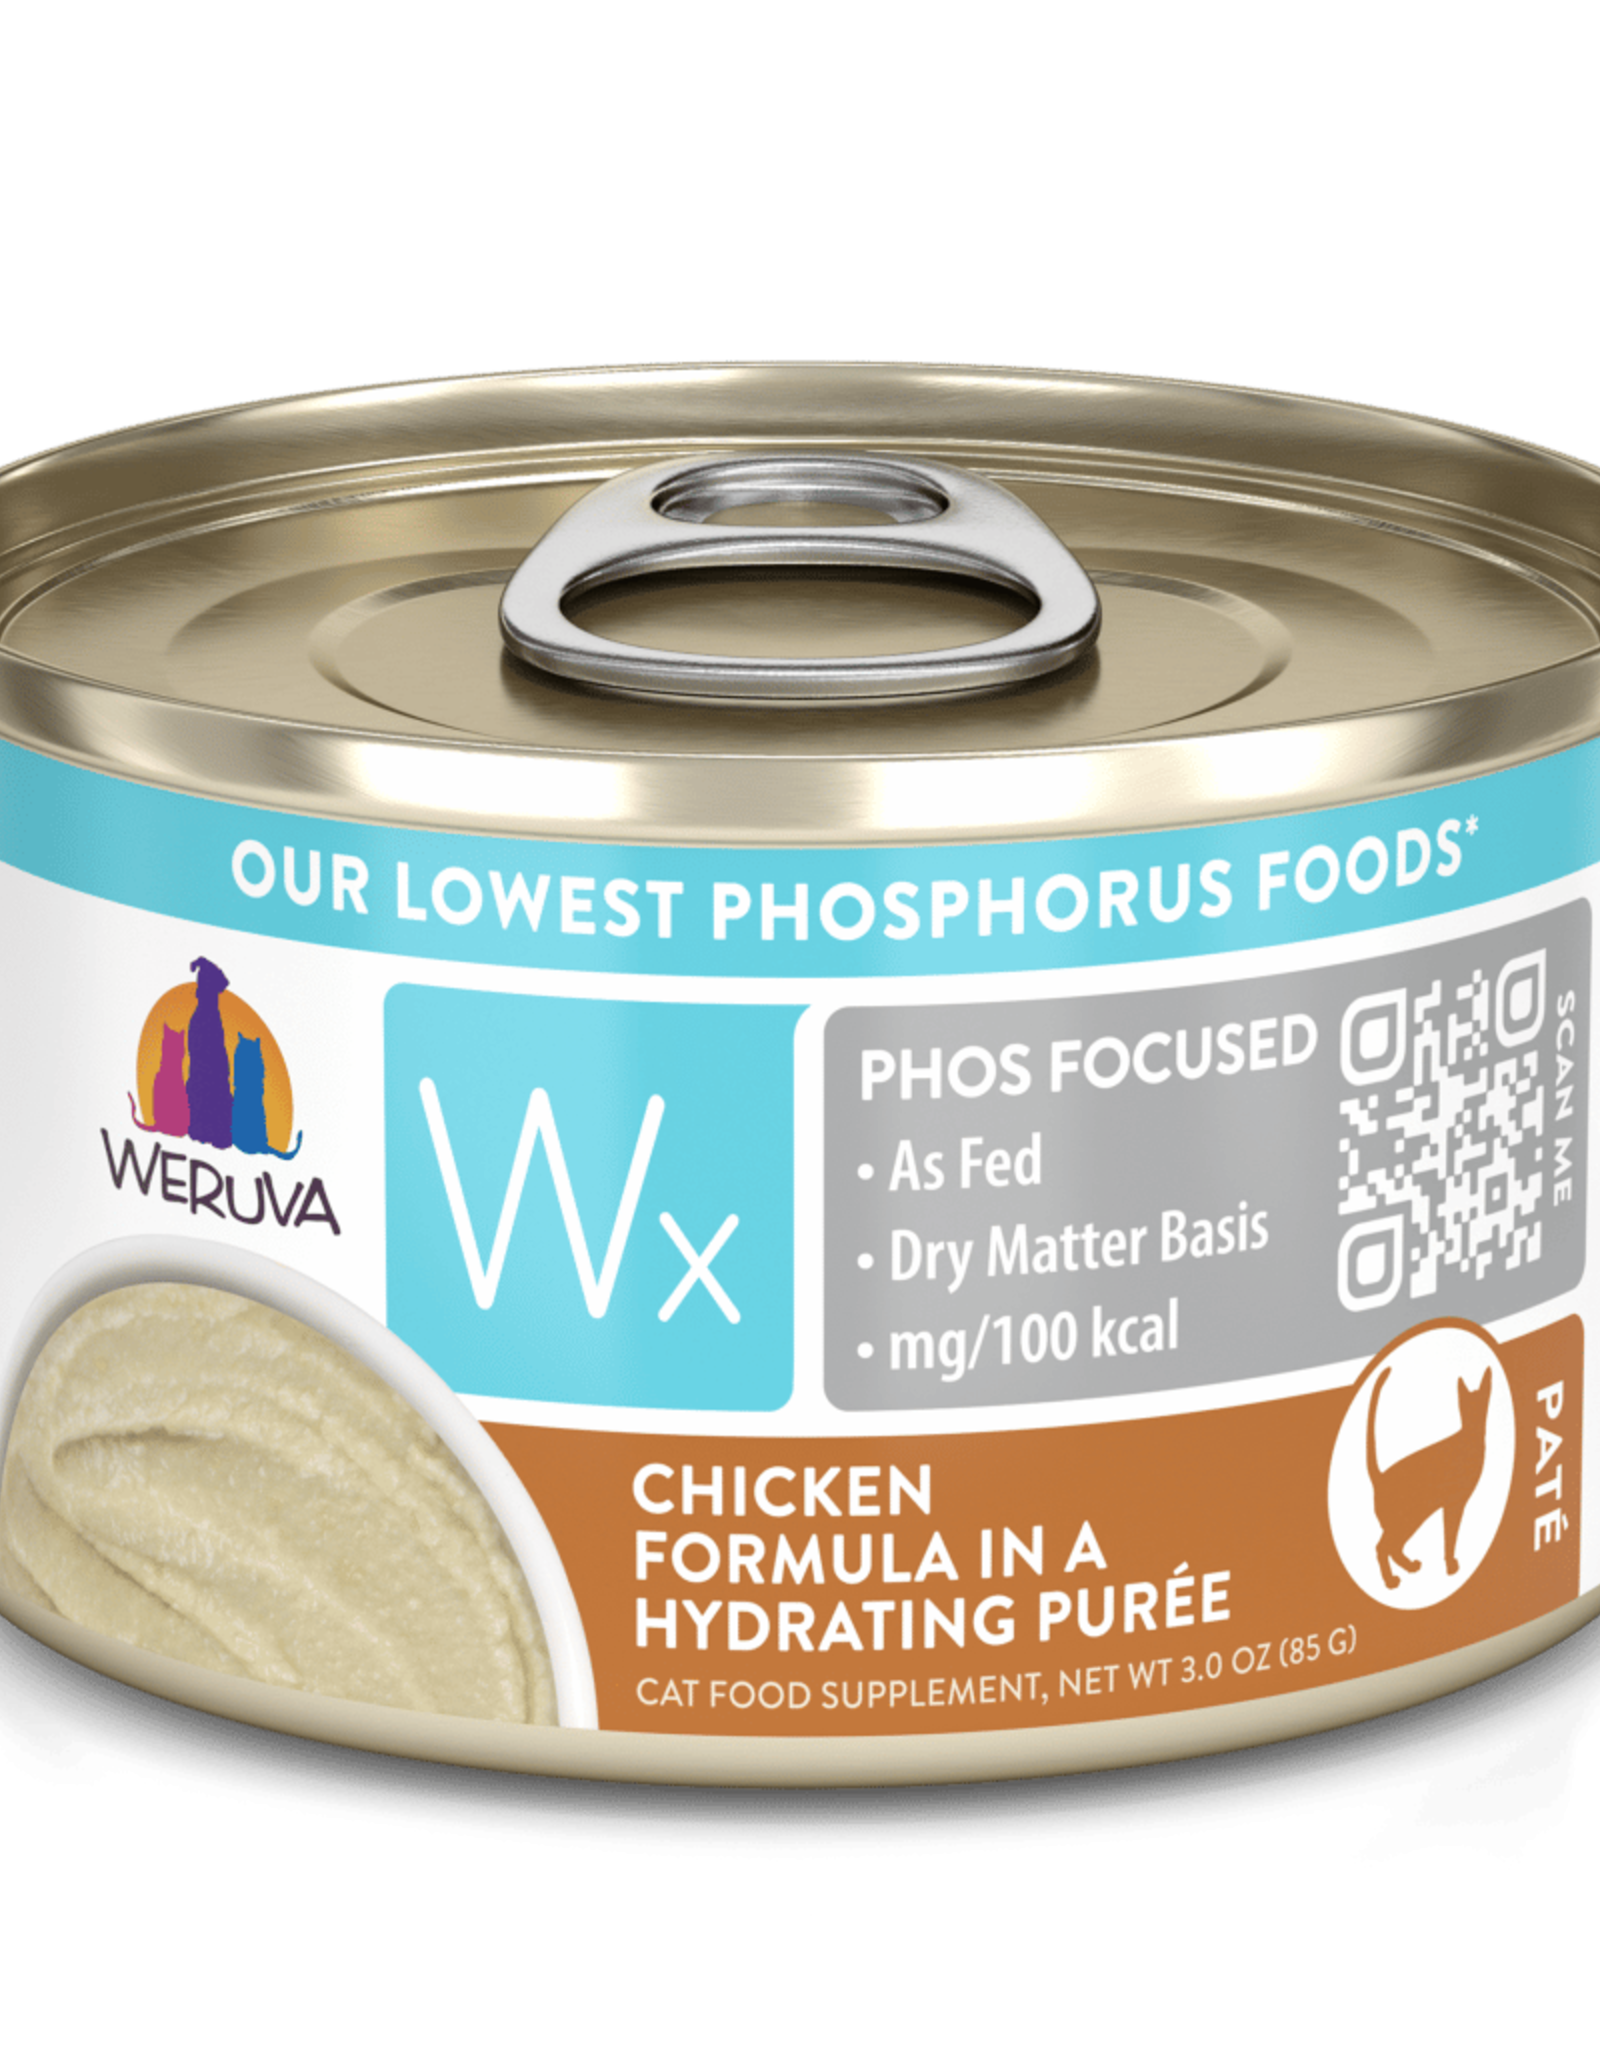 Weruva Wx Chicken Formula in Hudrating Puree